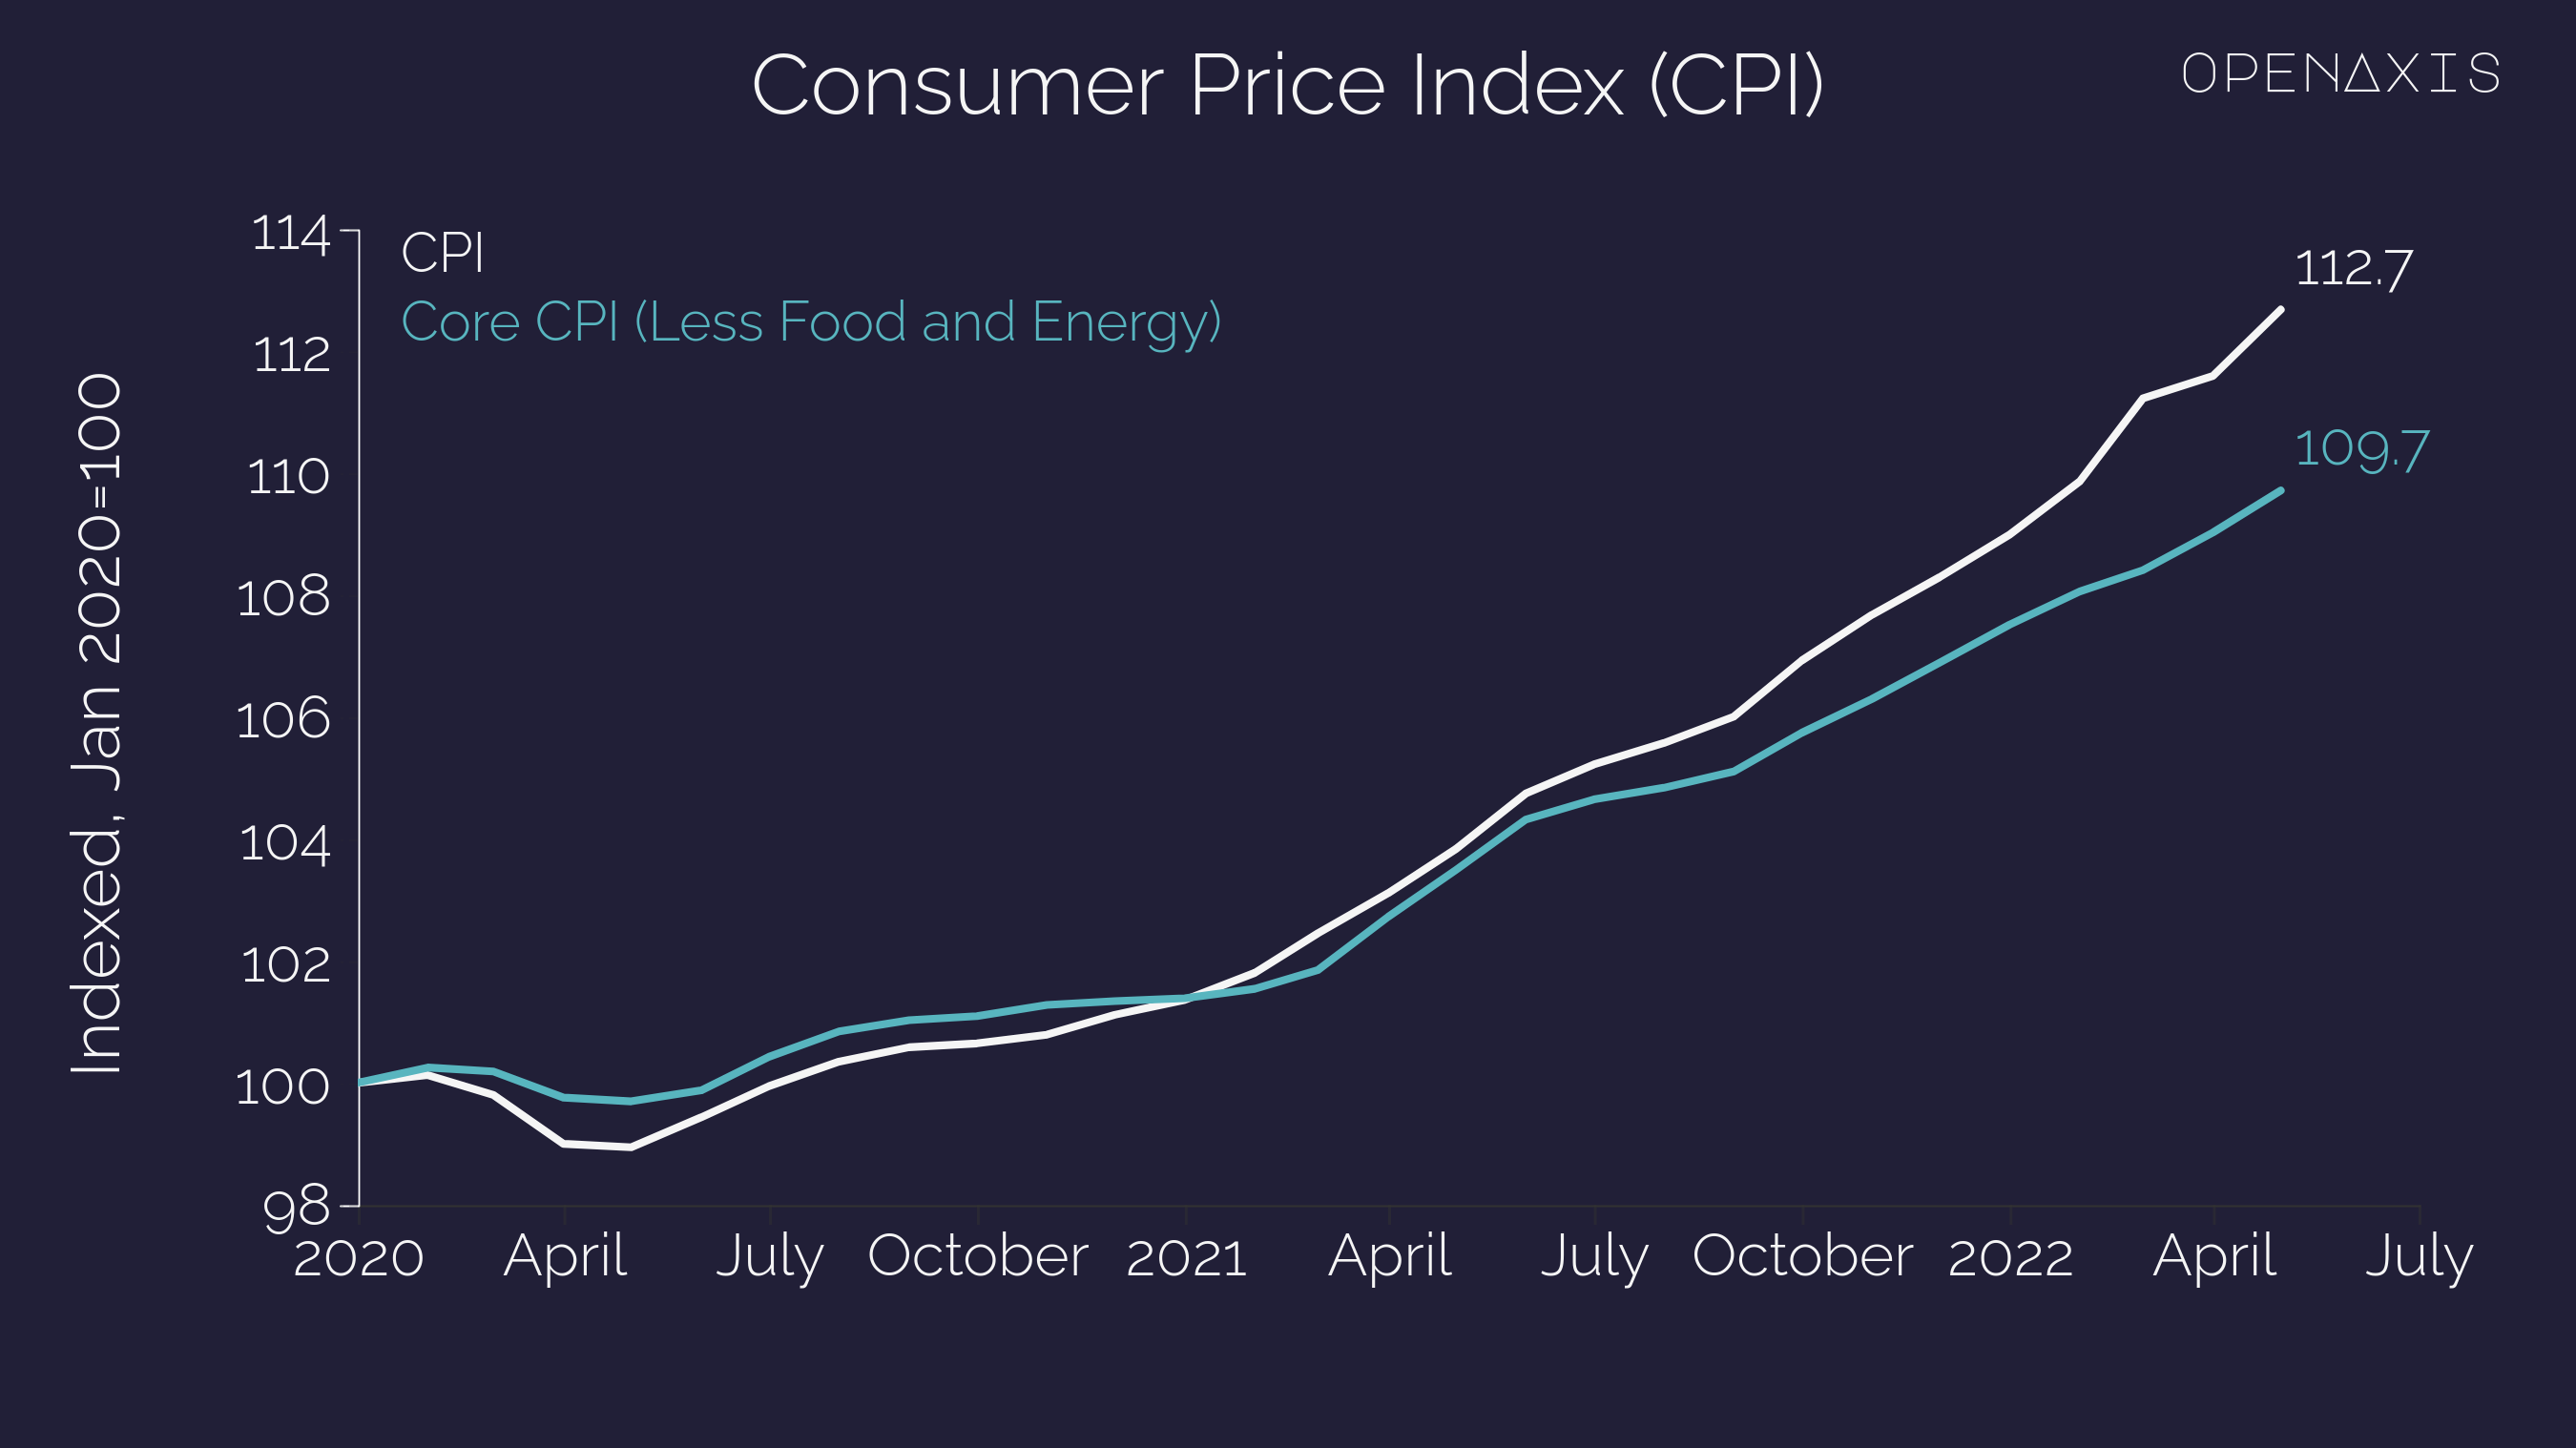 "Consumer Price Index (CPI)"